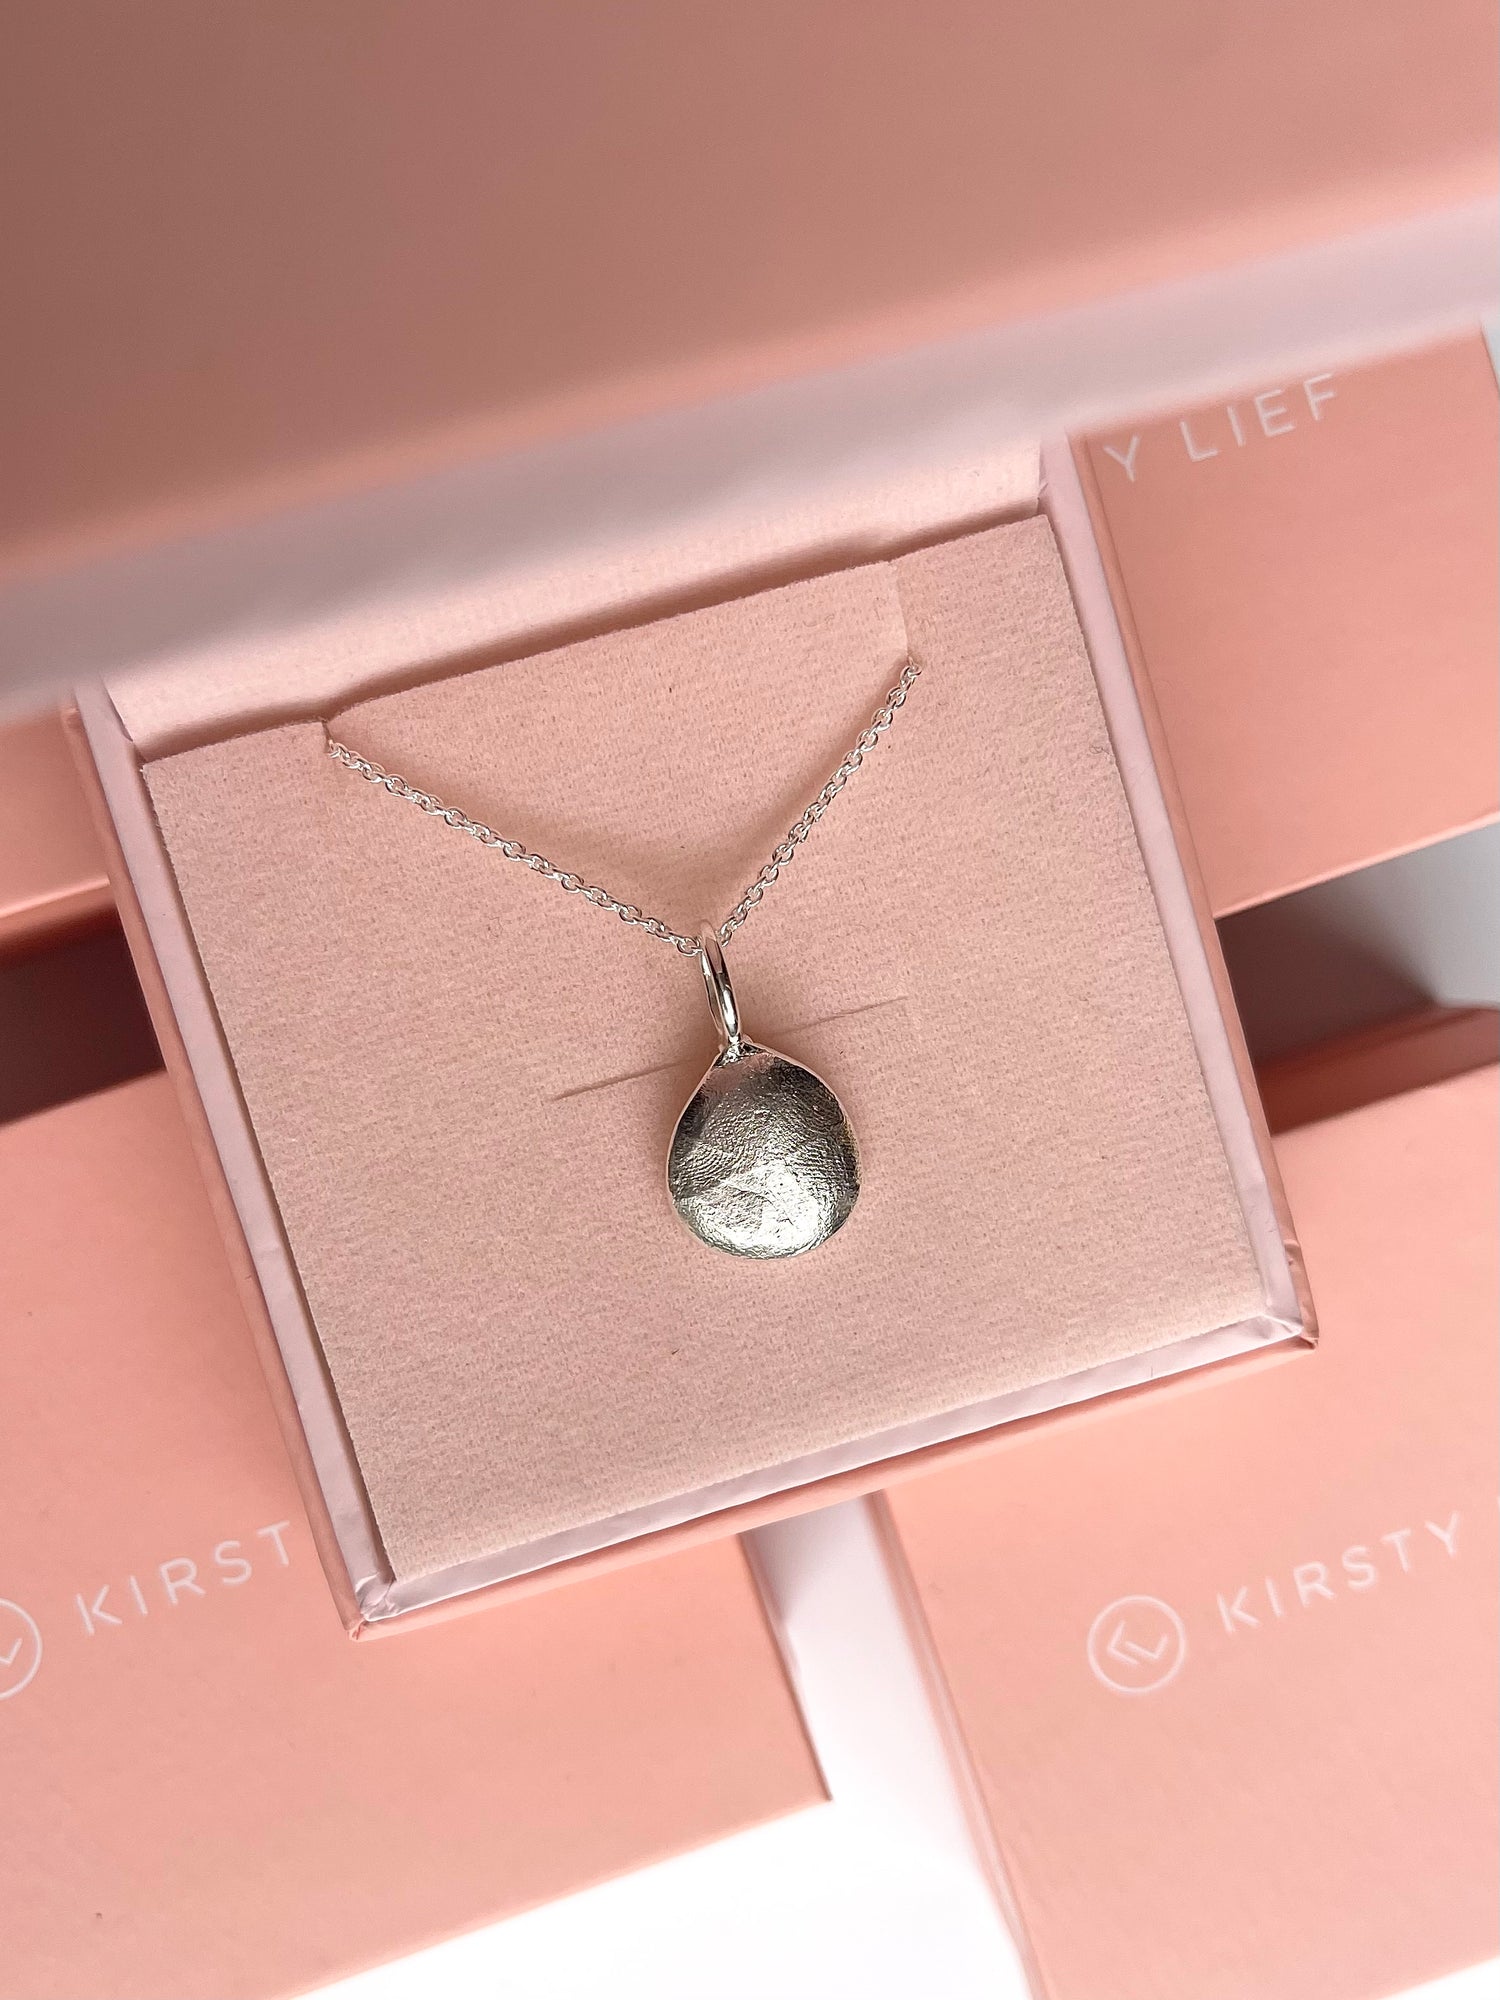 Infant Impression Pendant - Sterling Silver - Fingerprint Impression Kit + Necklace